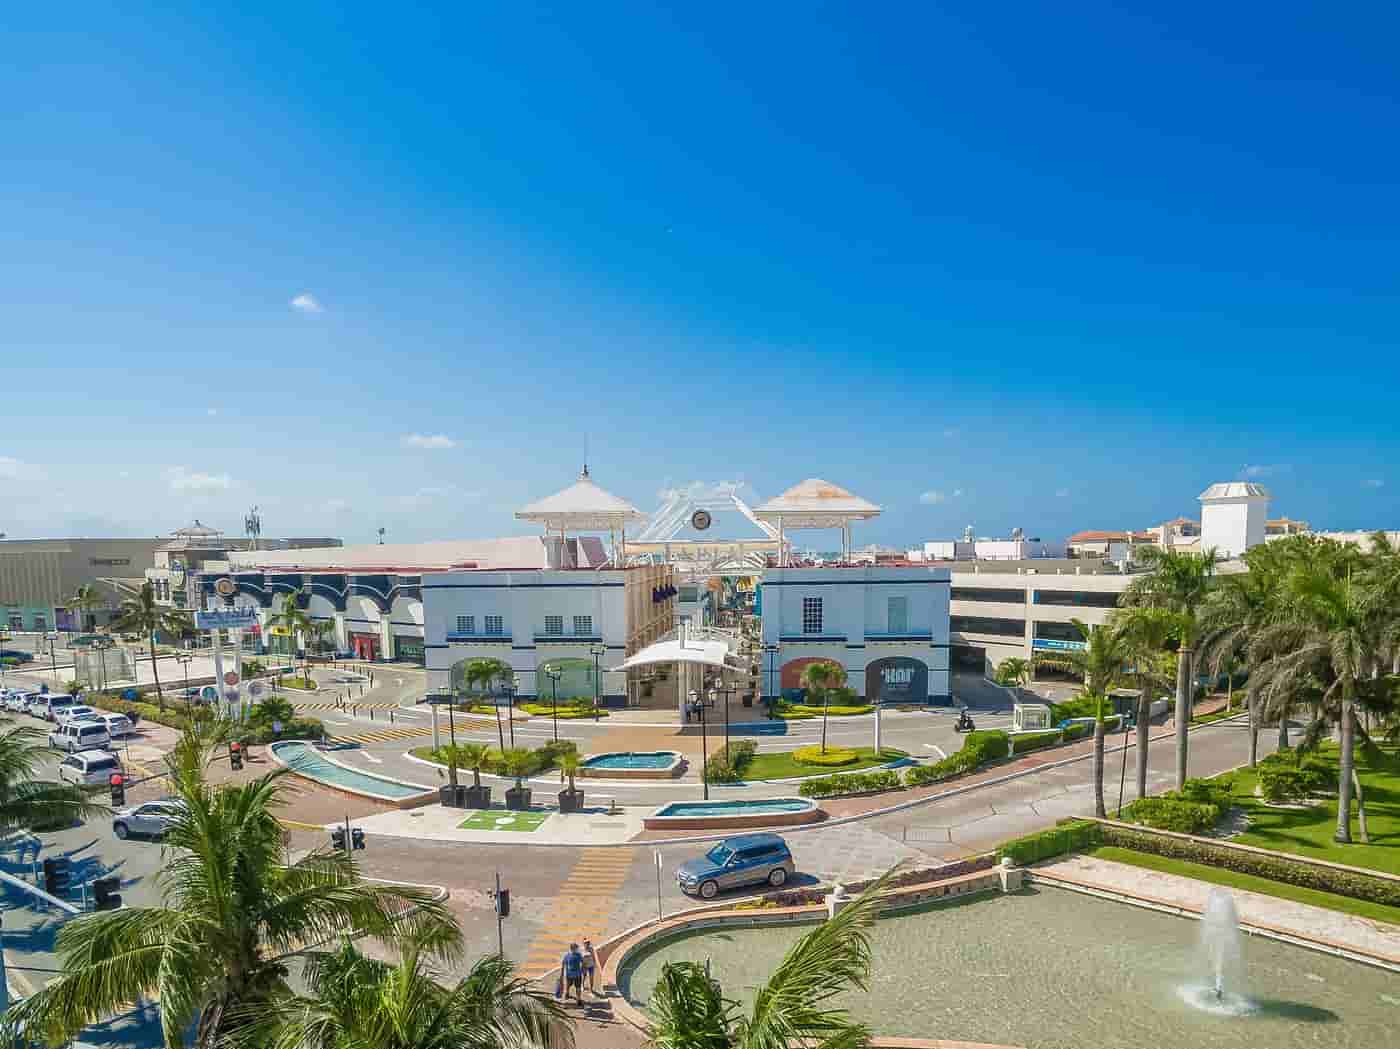 Mejores Centros Comerciales en Cancún : Plaza La Isla Mall Cancun